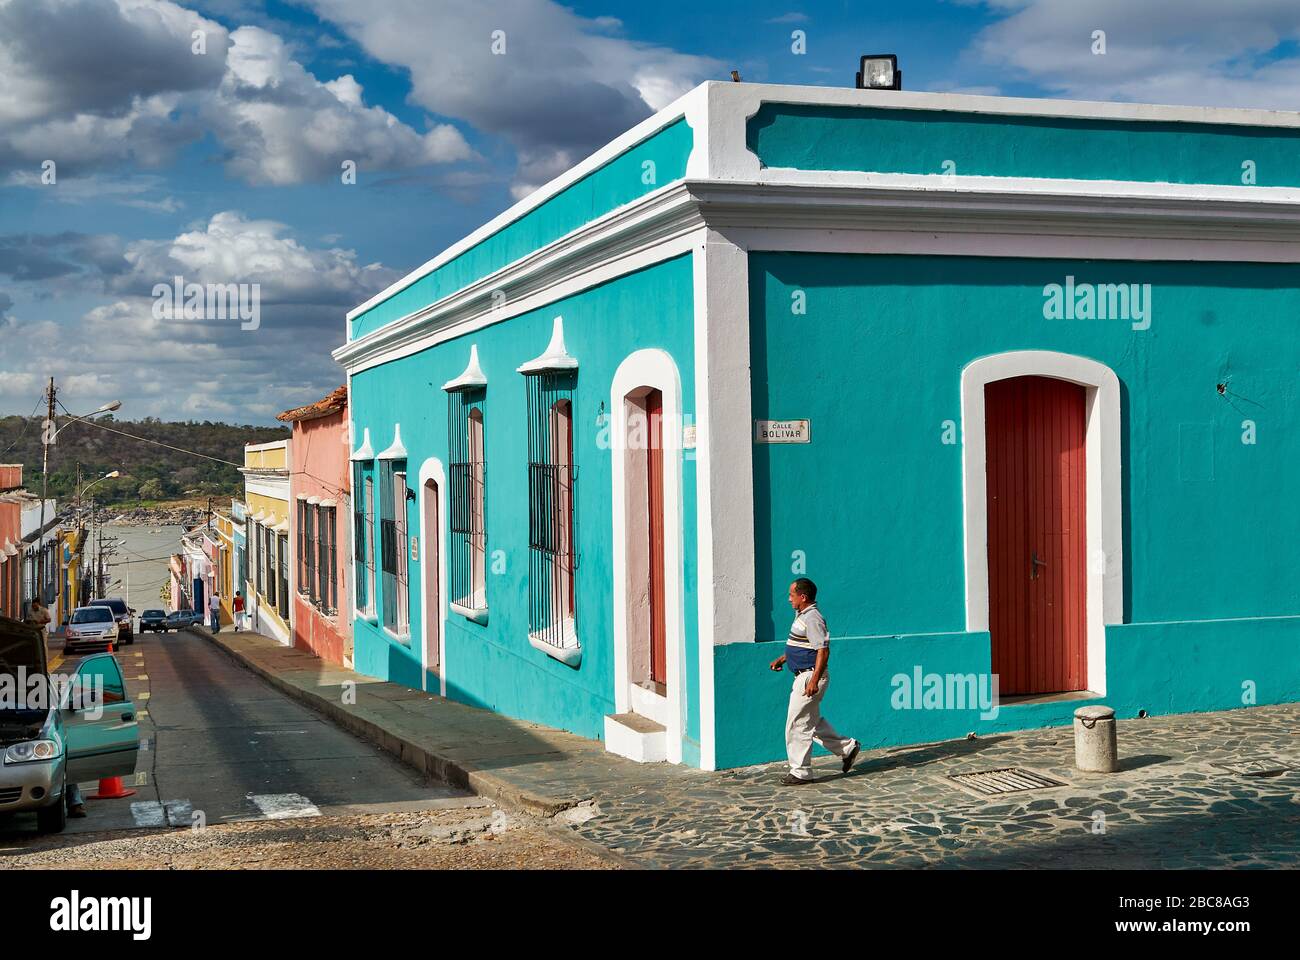 Straße im historischen spanischen Viertel Ciudad Bolivar, Kolonialarchitektur, Venezuela, Südamerika, Amerika Stockfoto